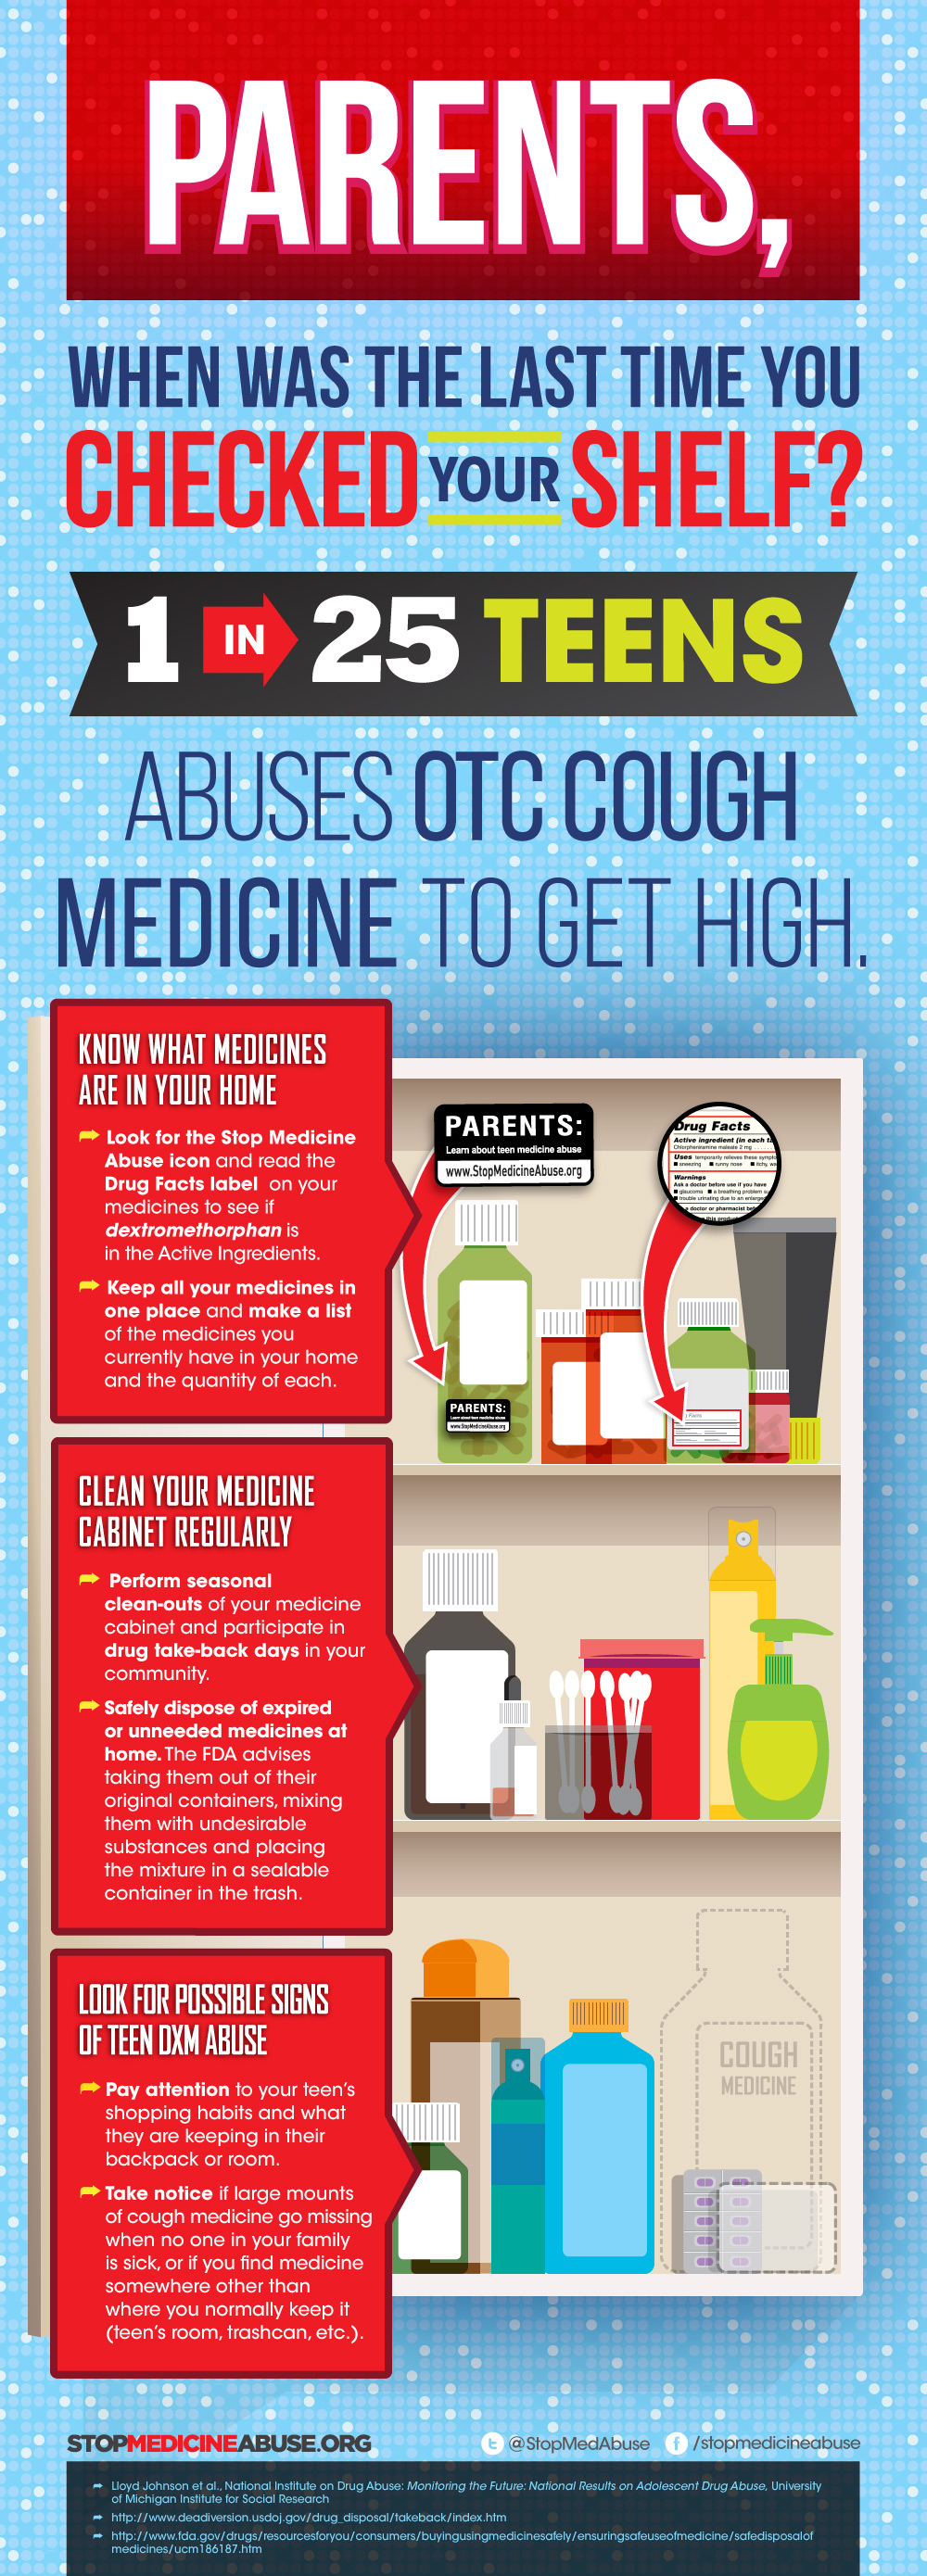 Parents_MedCab_Infographic